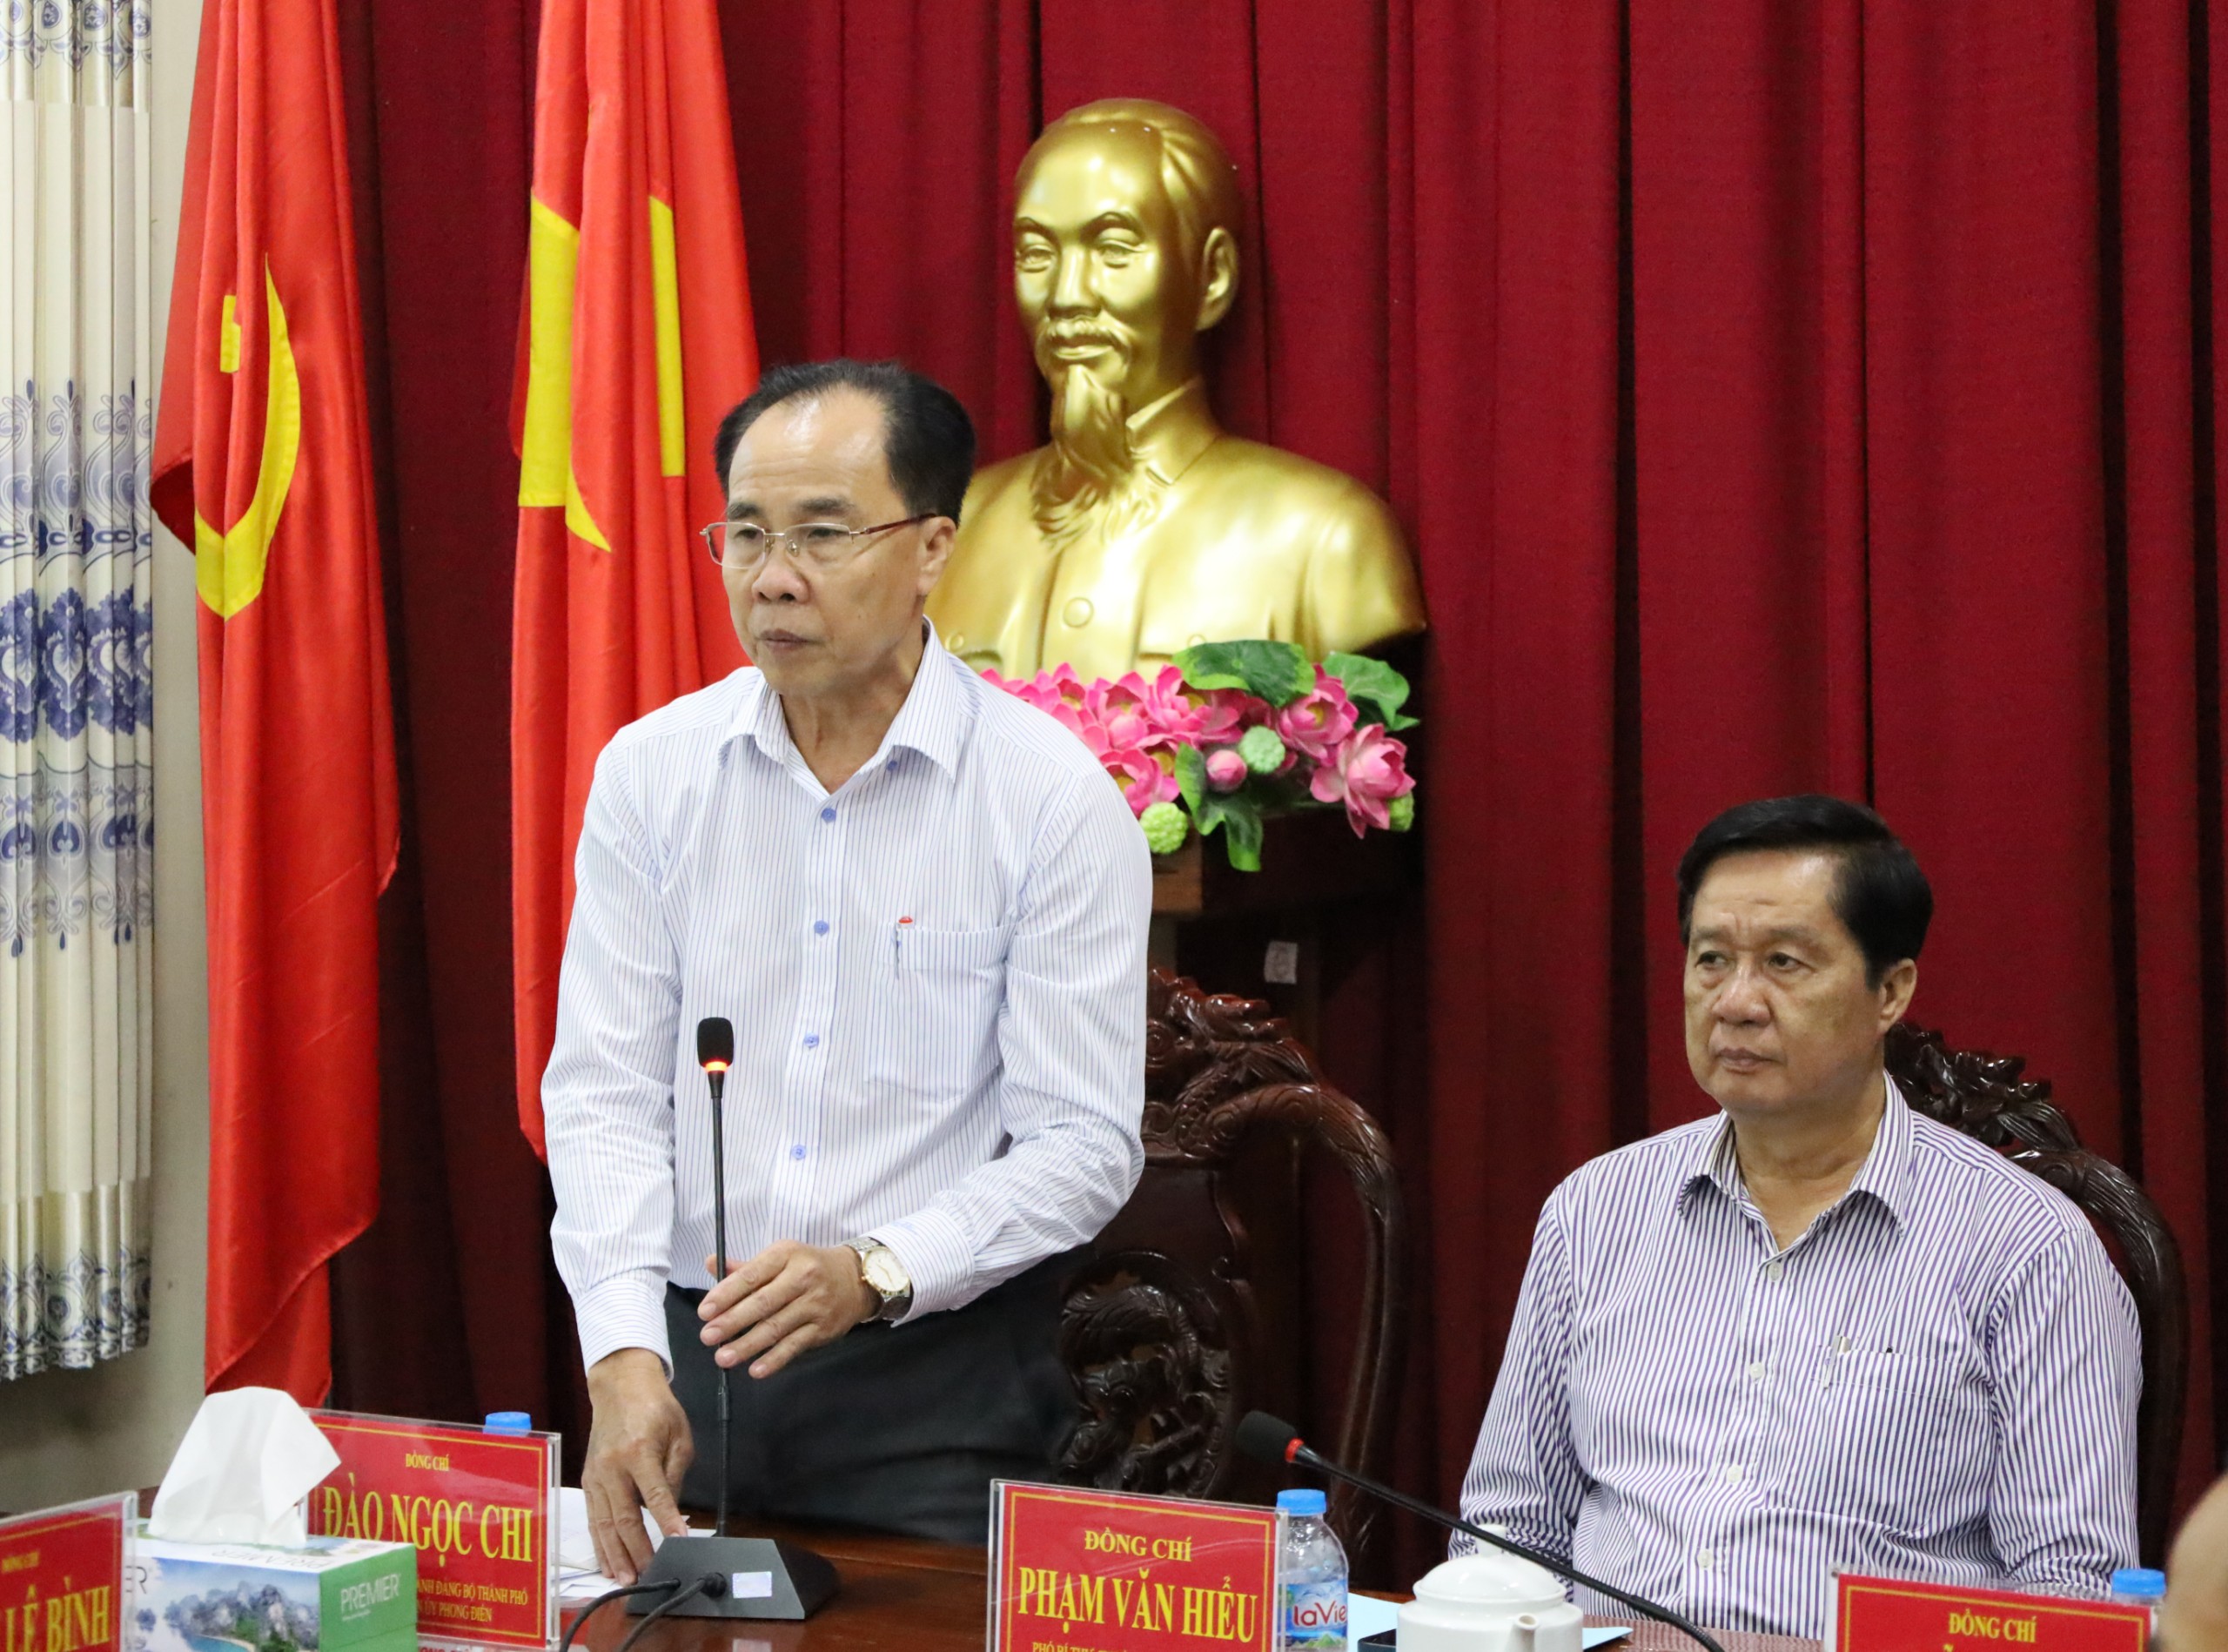 Ông Đào Ngọc Chi - Bí thư Huyện ủy Phong Điền phát biểu tiếp thu ý kiến chỉ đạo của lãnh đạo Thành ủy Cần Thơ.